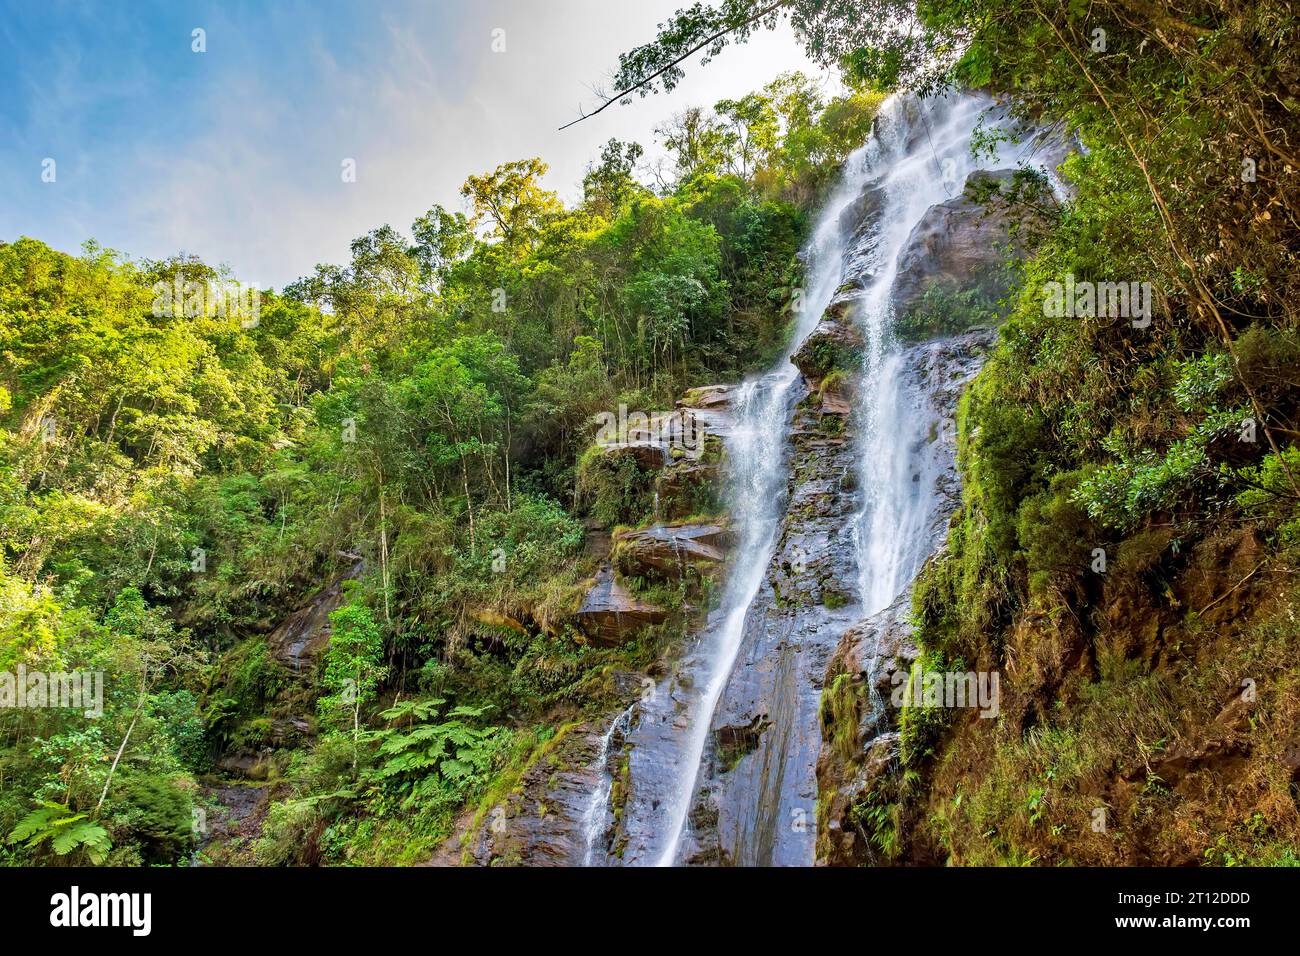 Cascade parmi la végétation dense et les rochers de la forêt tropicale dans l'état de Minas Gerais, Brésil Banque D'Images